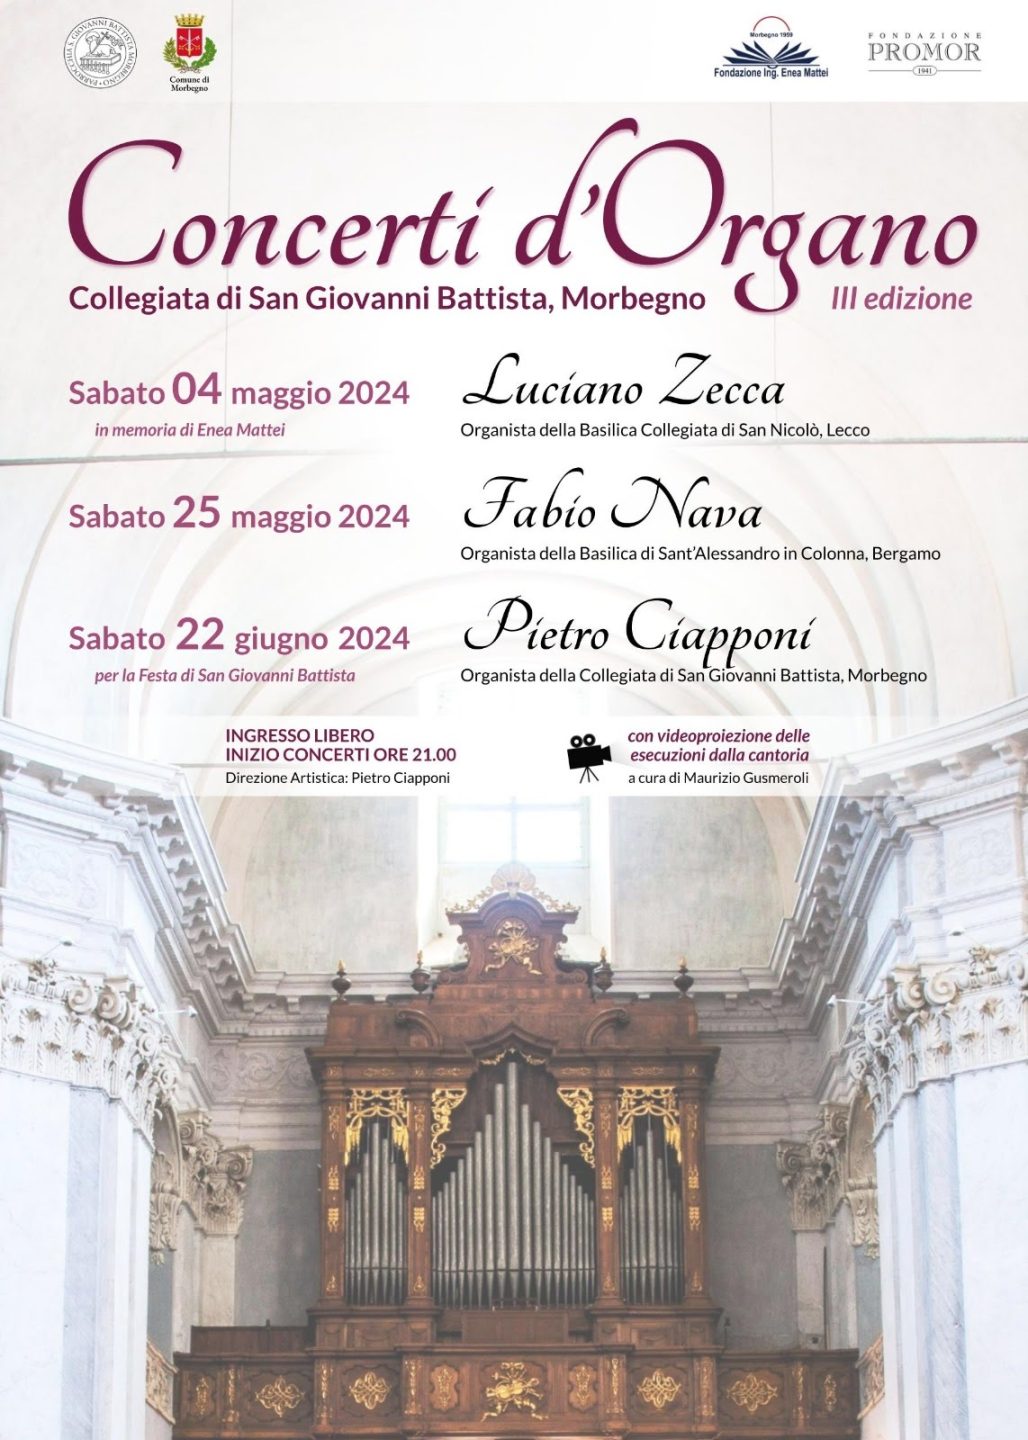 Concerti d'organo in Collegiata a Morbegno